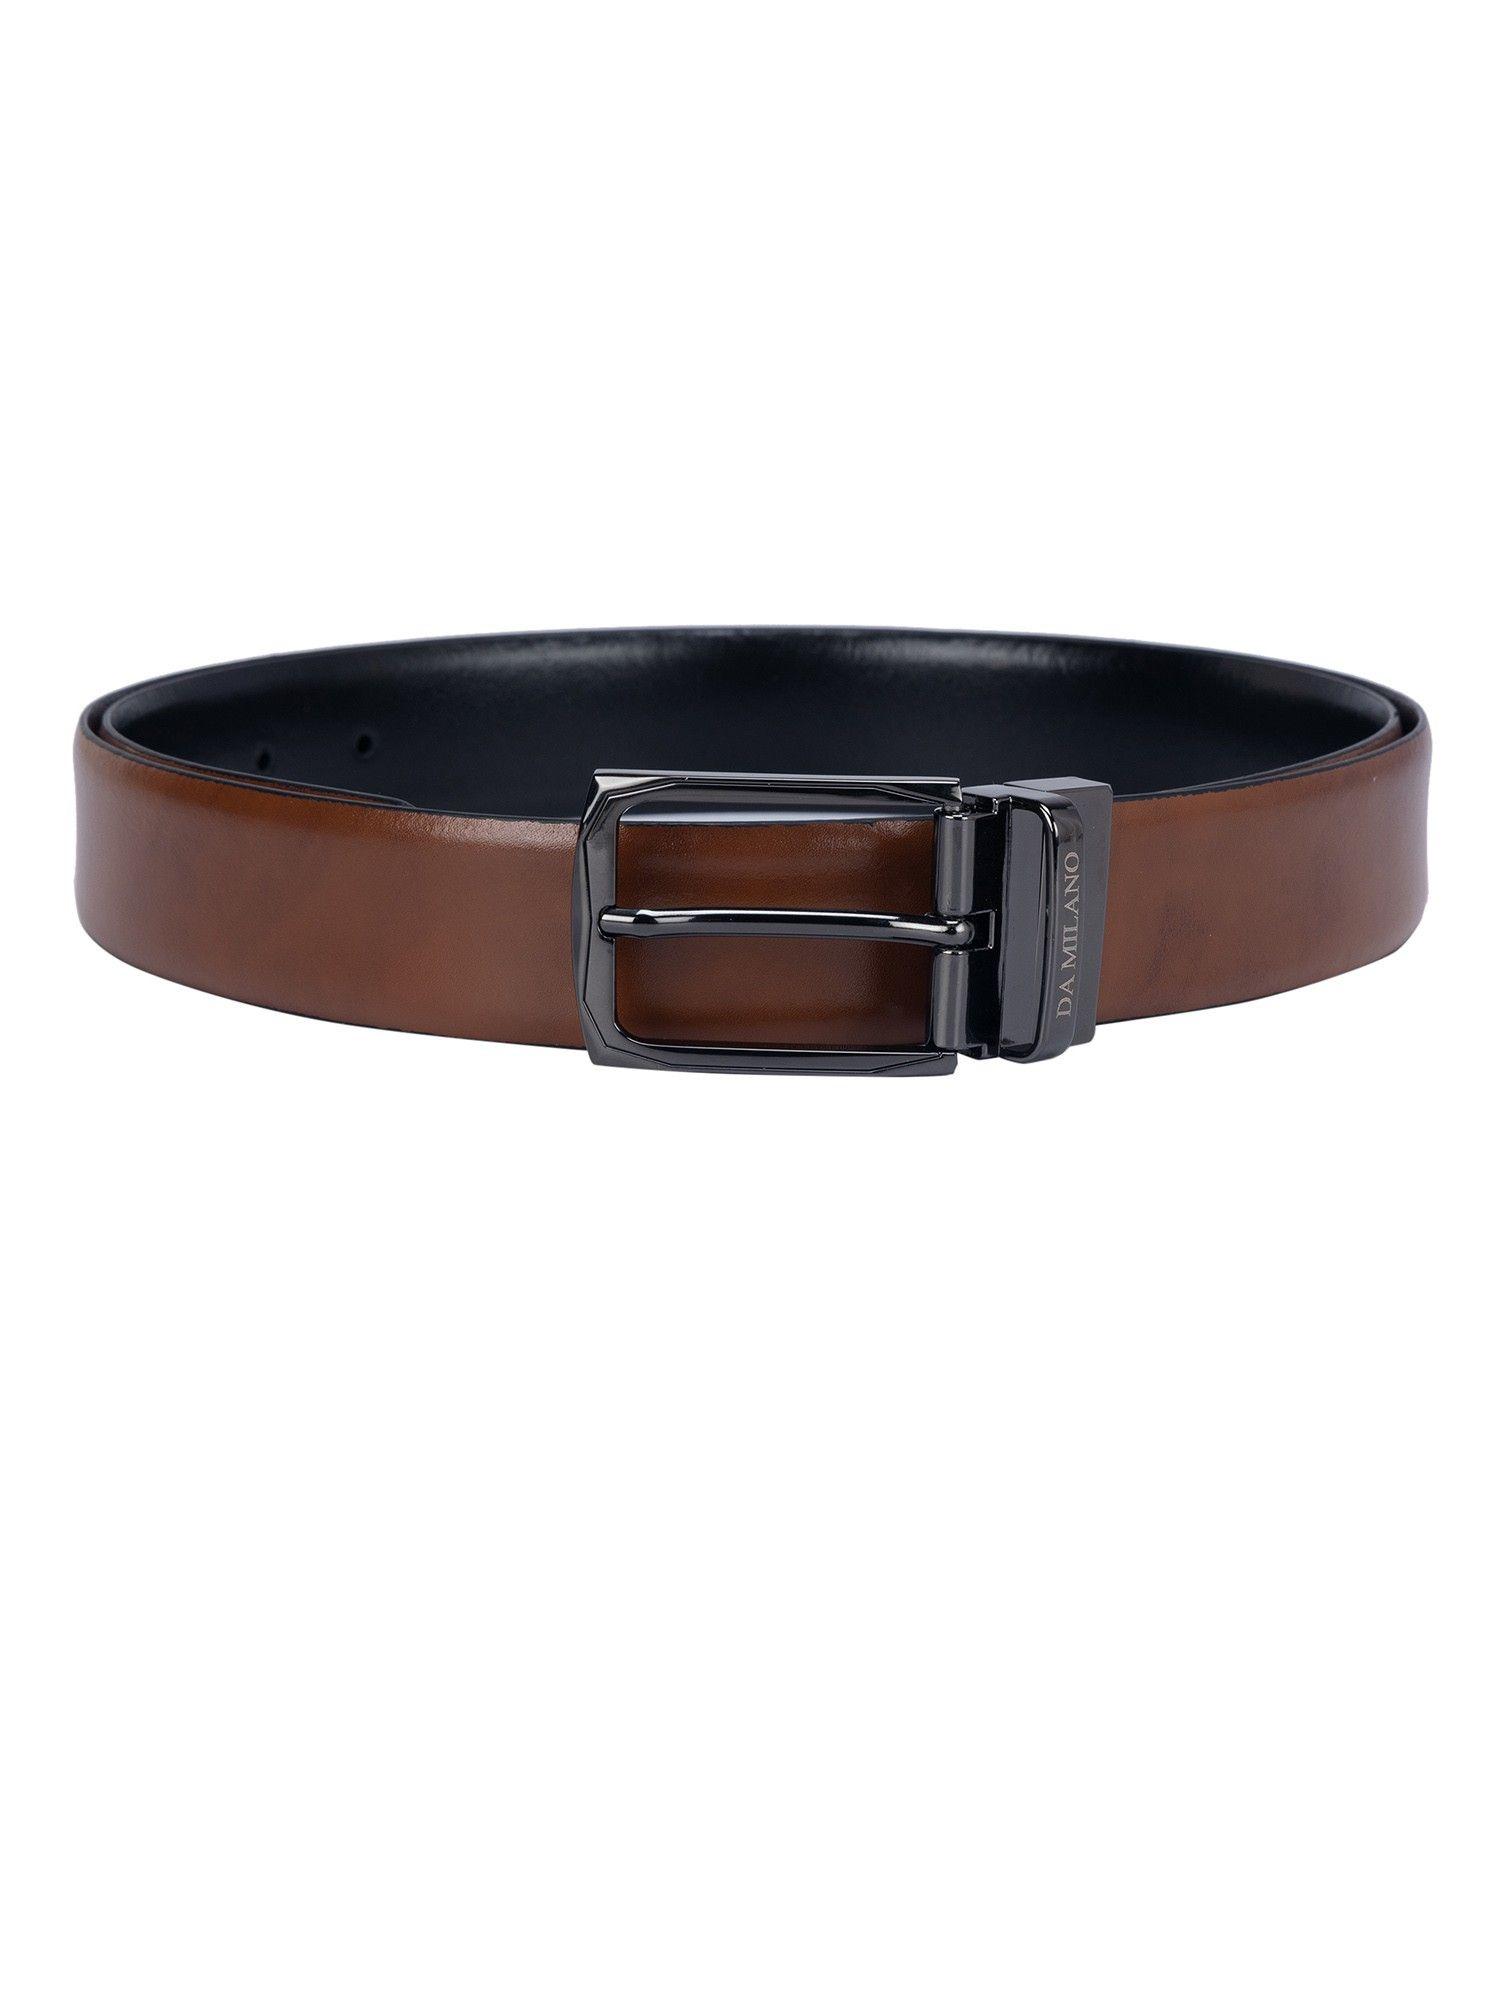 plain leather brown & black reversible belt bm-3292-35r-olpln